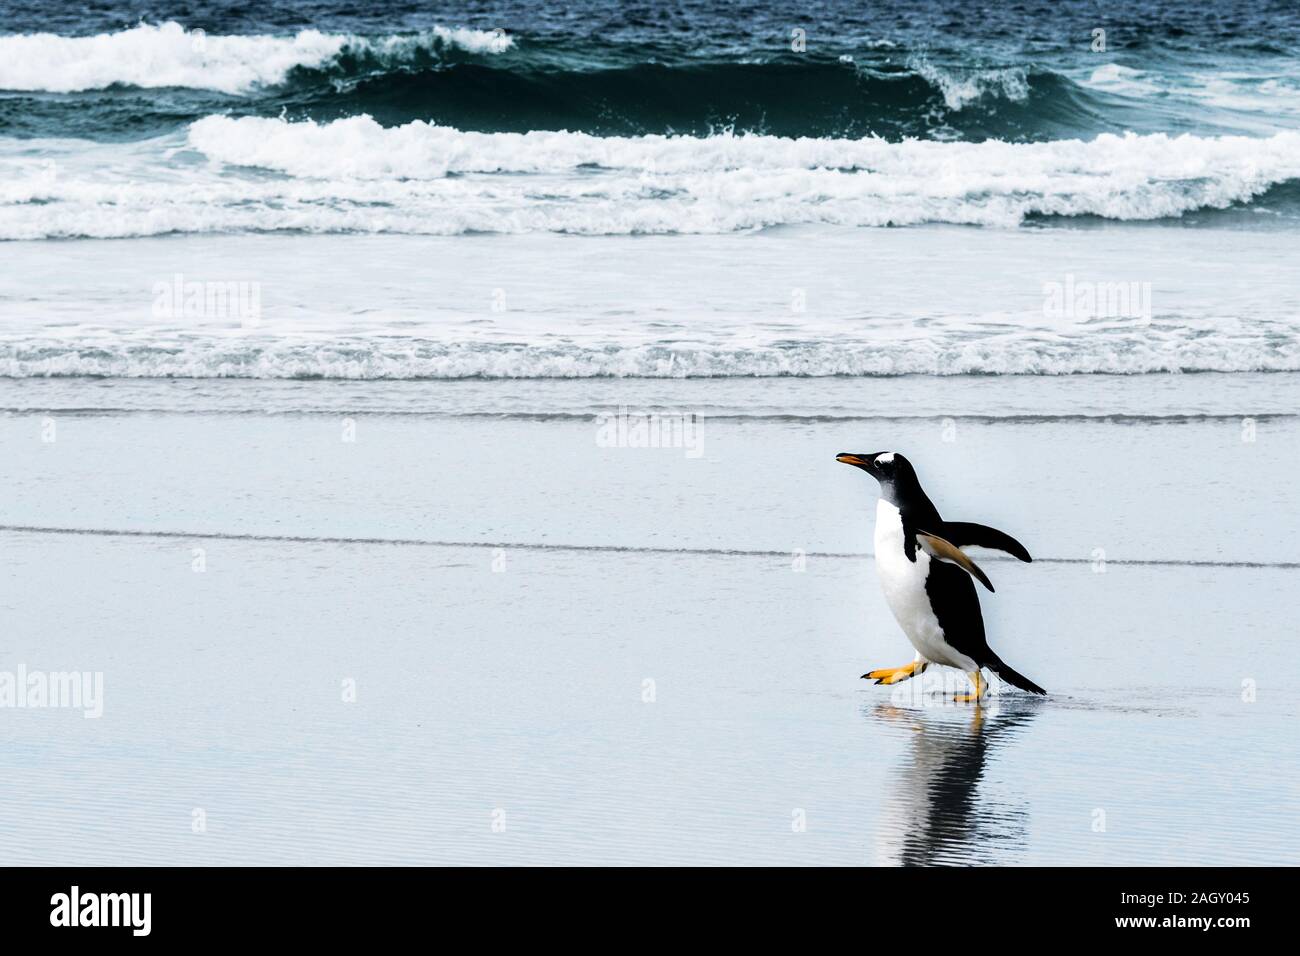 Wild, des profils Gentoo pingouin, Pygoscellis Papouasie, marcher sur la plage à l'encolure, Saunders Island, dans les îles Malouines, Atlantique Sud Banque D'Images